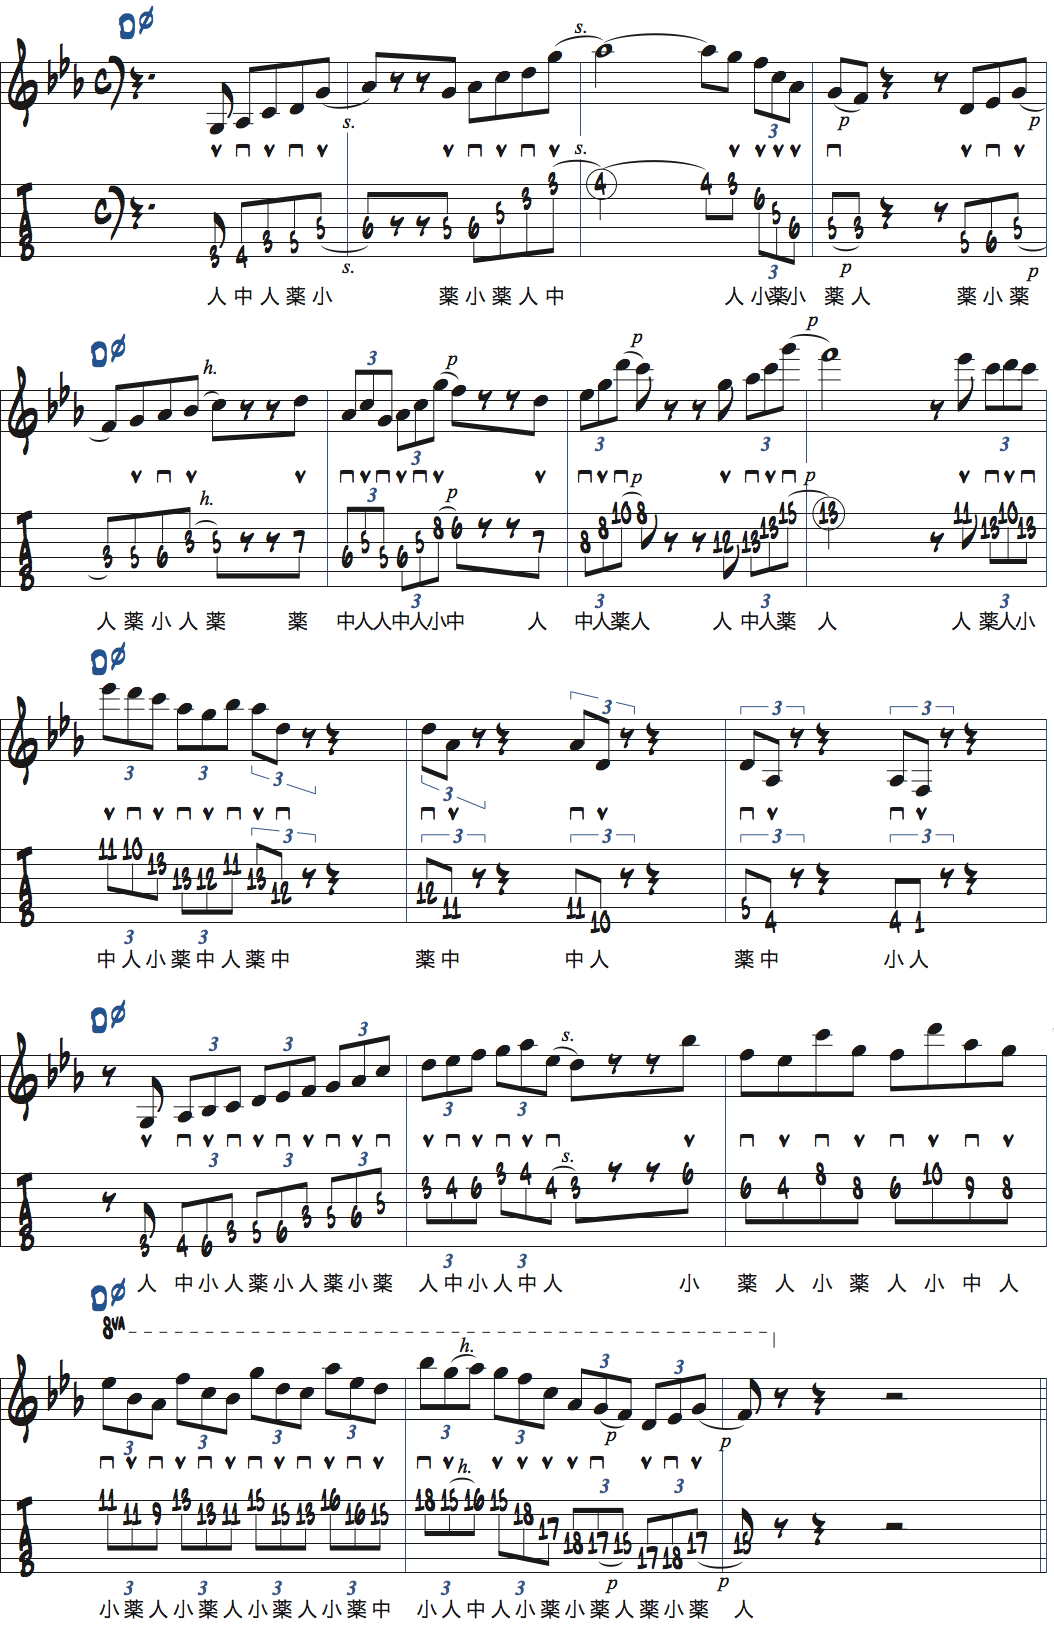 リックを使ったDm7(b5)コード上でのアドリブ例楽譜